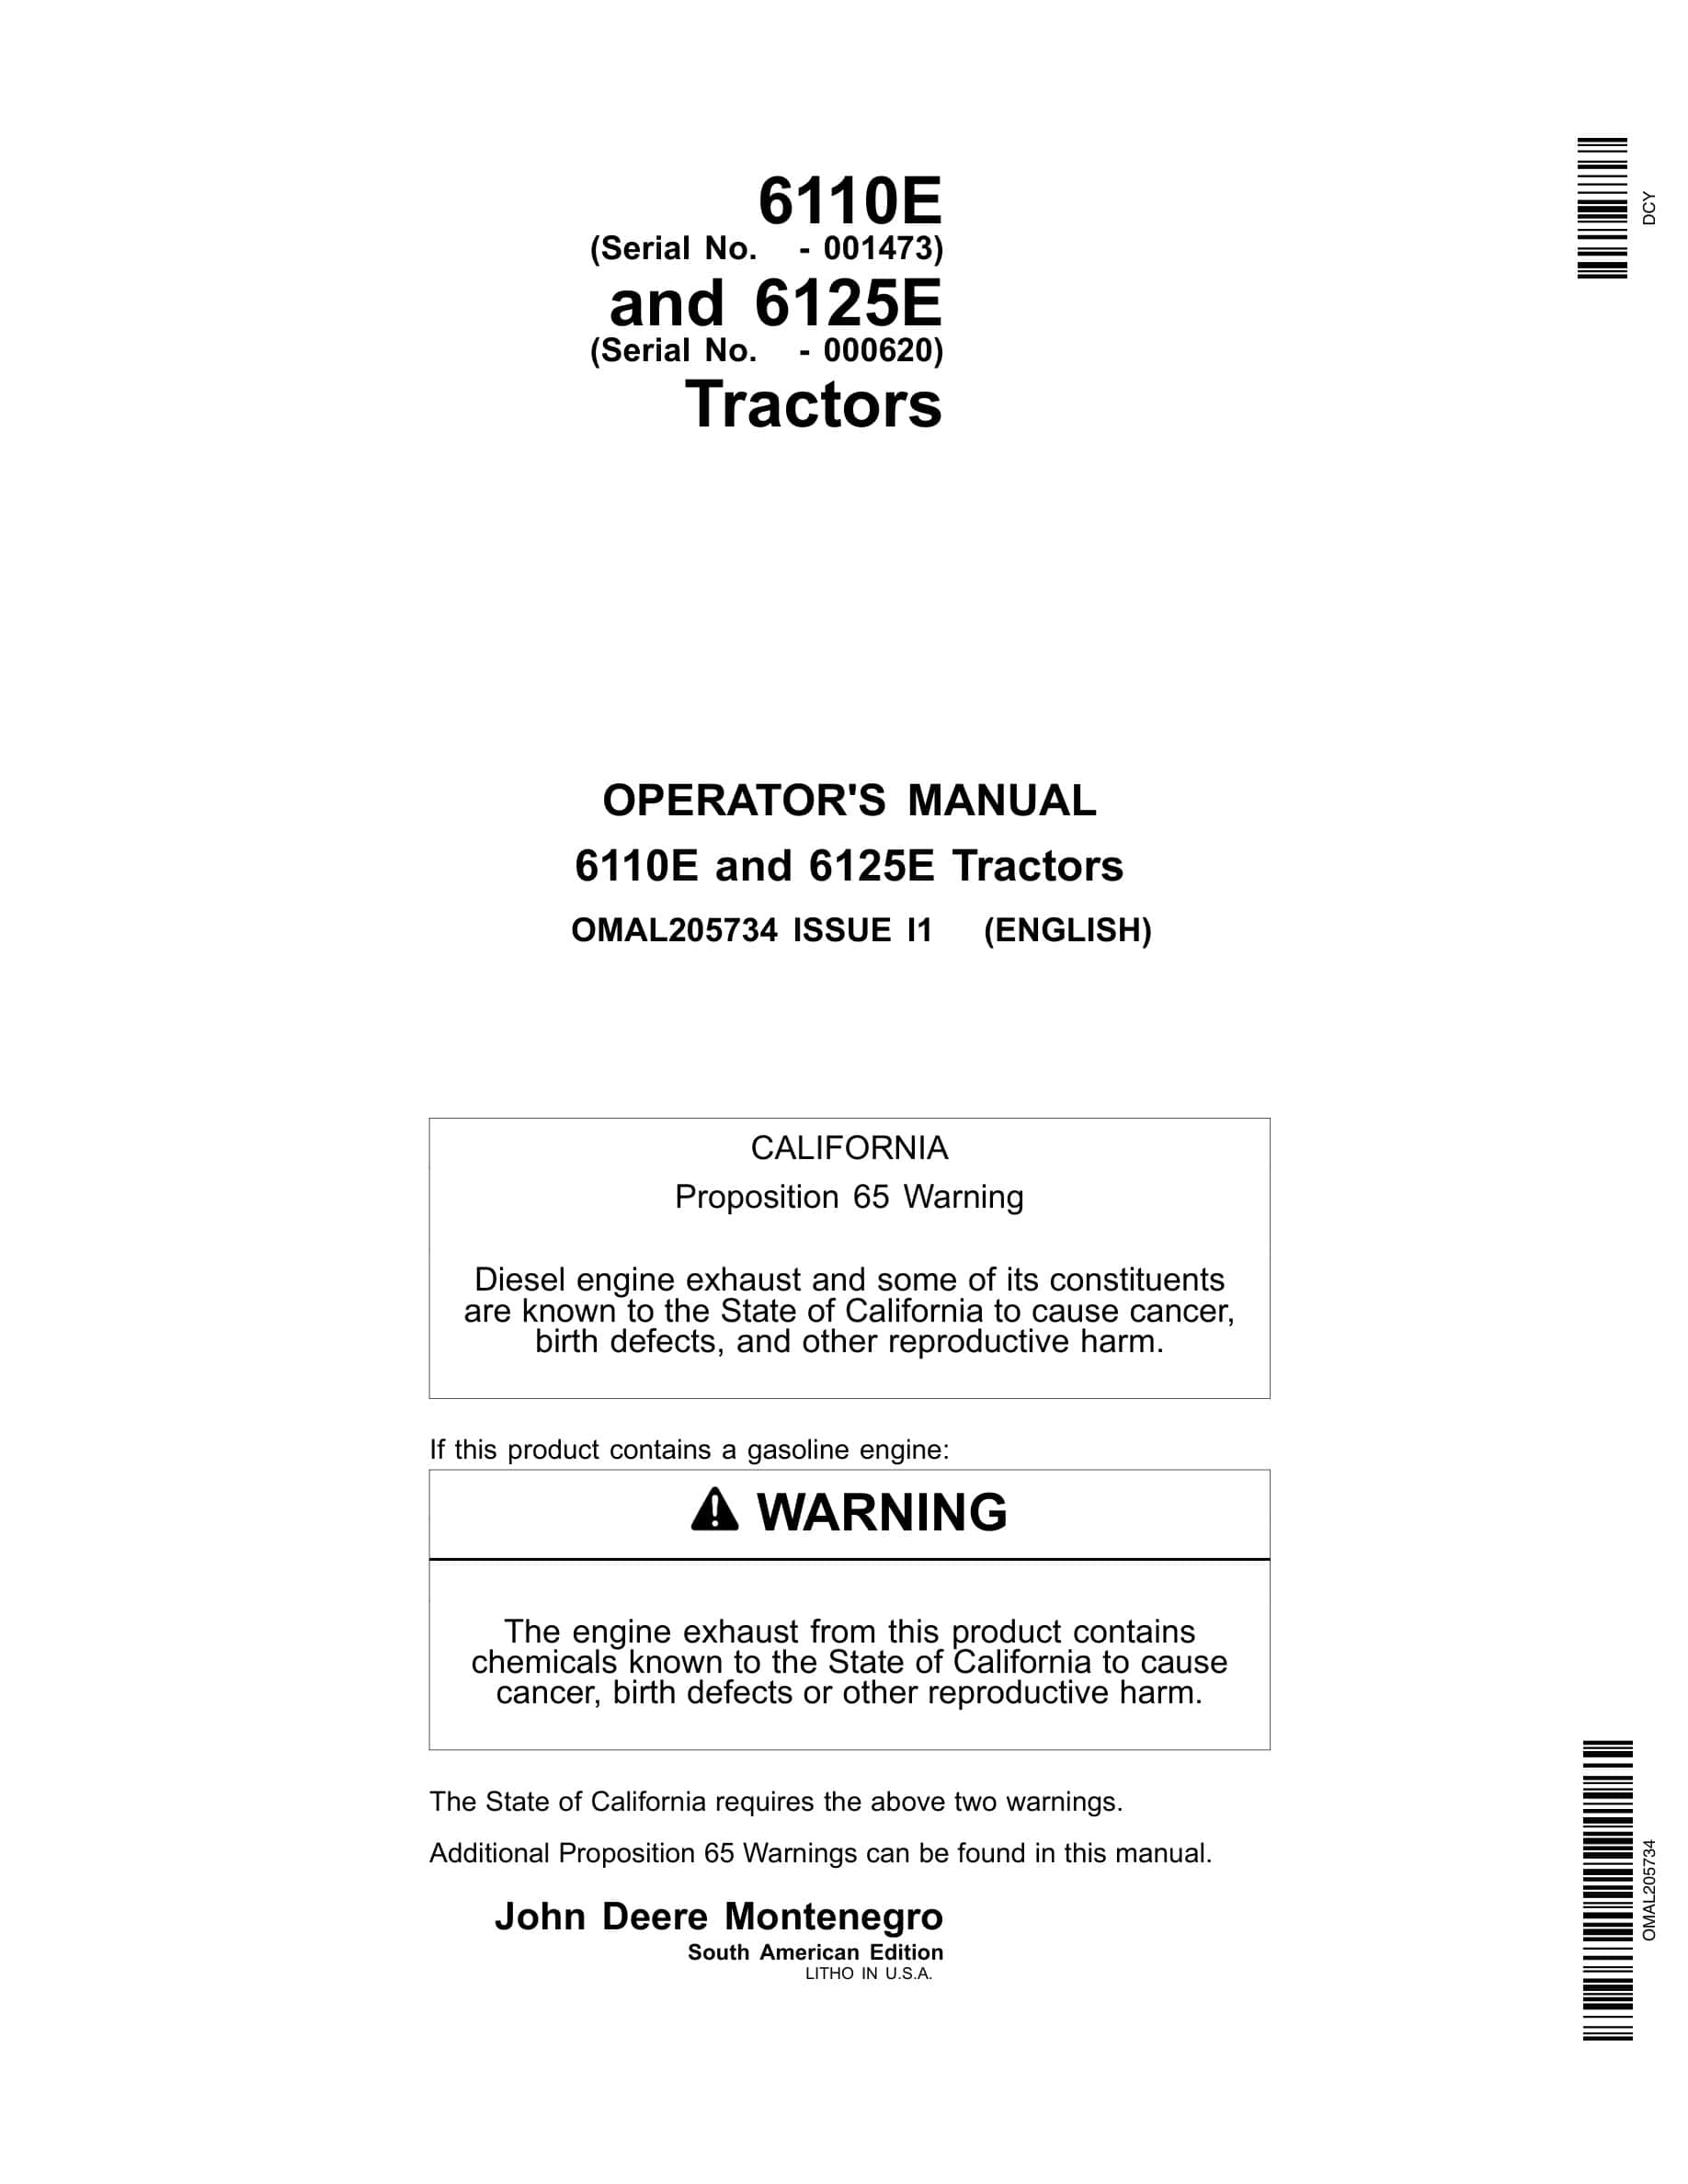 John Deere 6110e And 6125e Tractors Operator Manuals OMAL205734-1